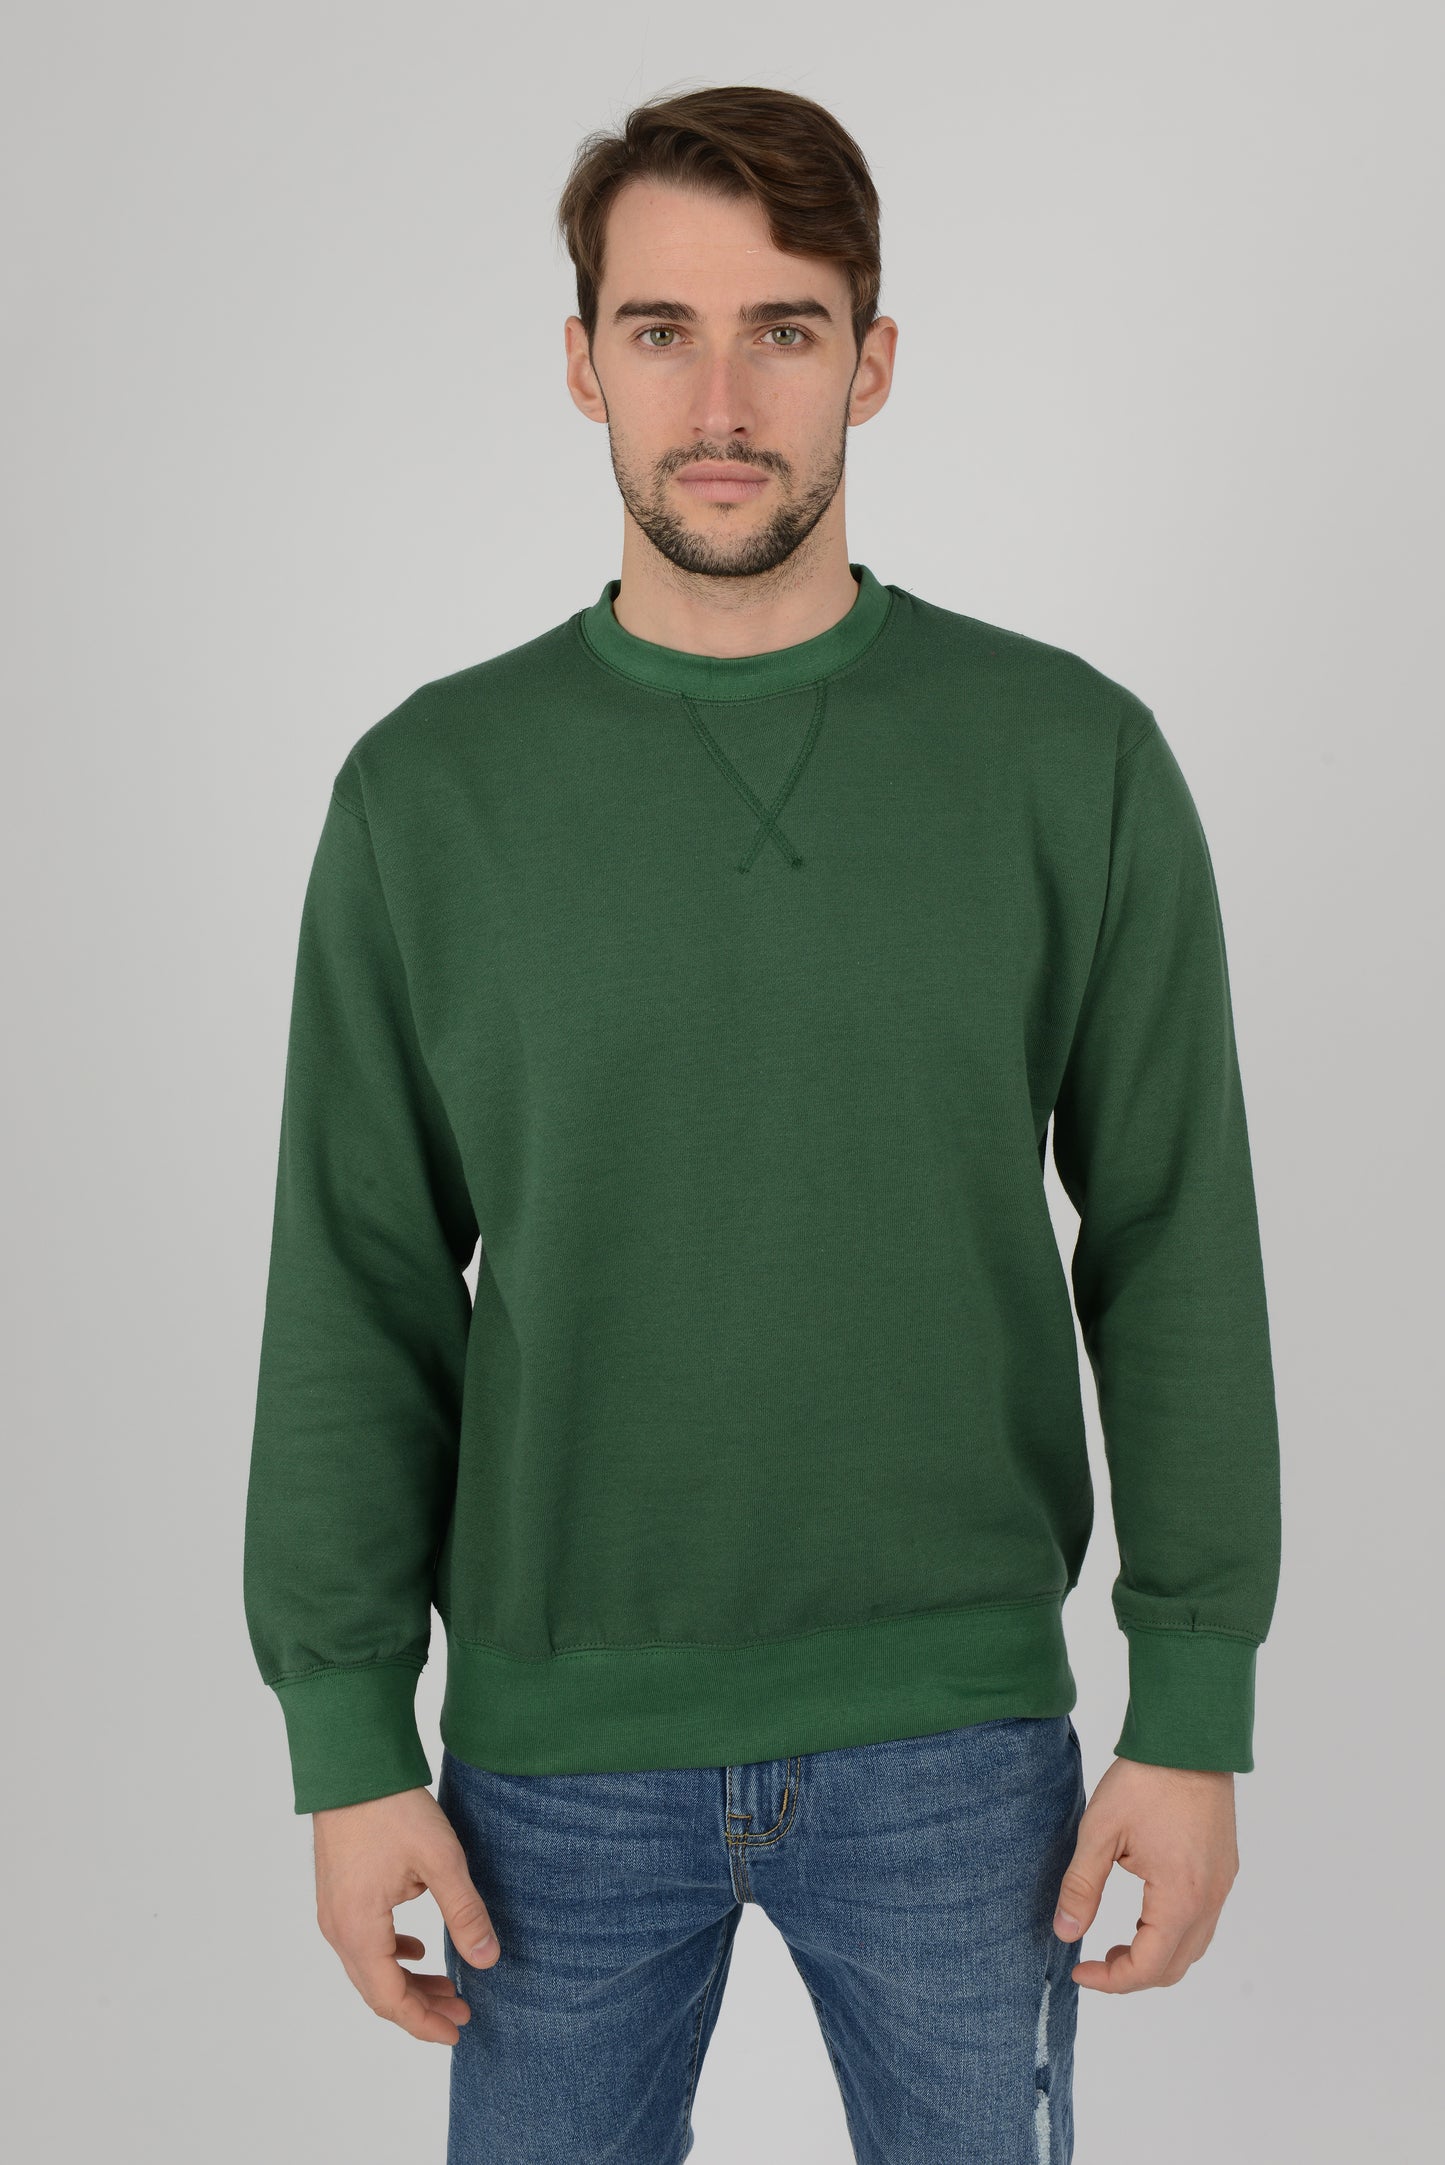 Mens-Plain-Fleece-Sweatshirt-Jersey-Bottle-Green